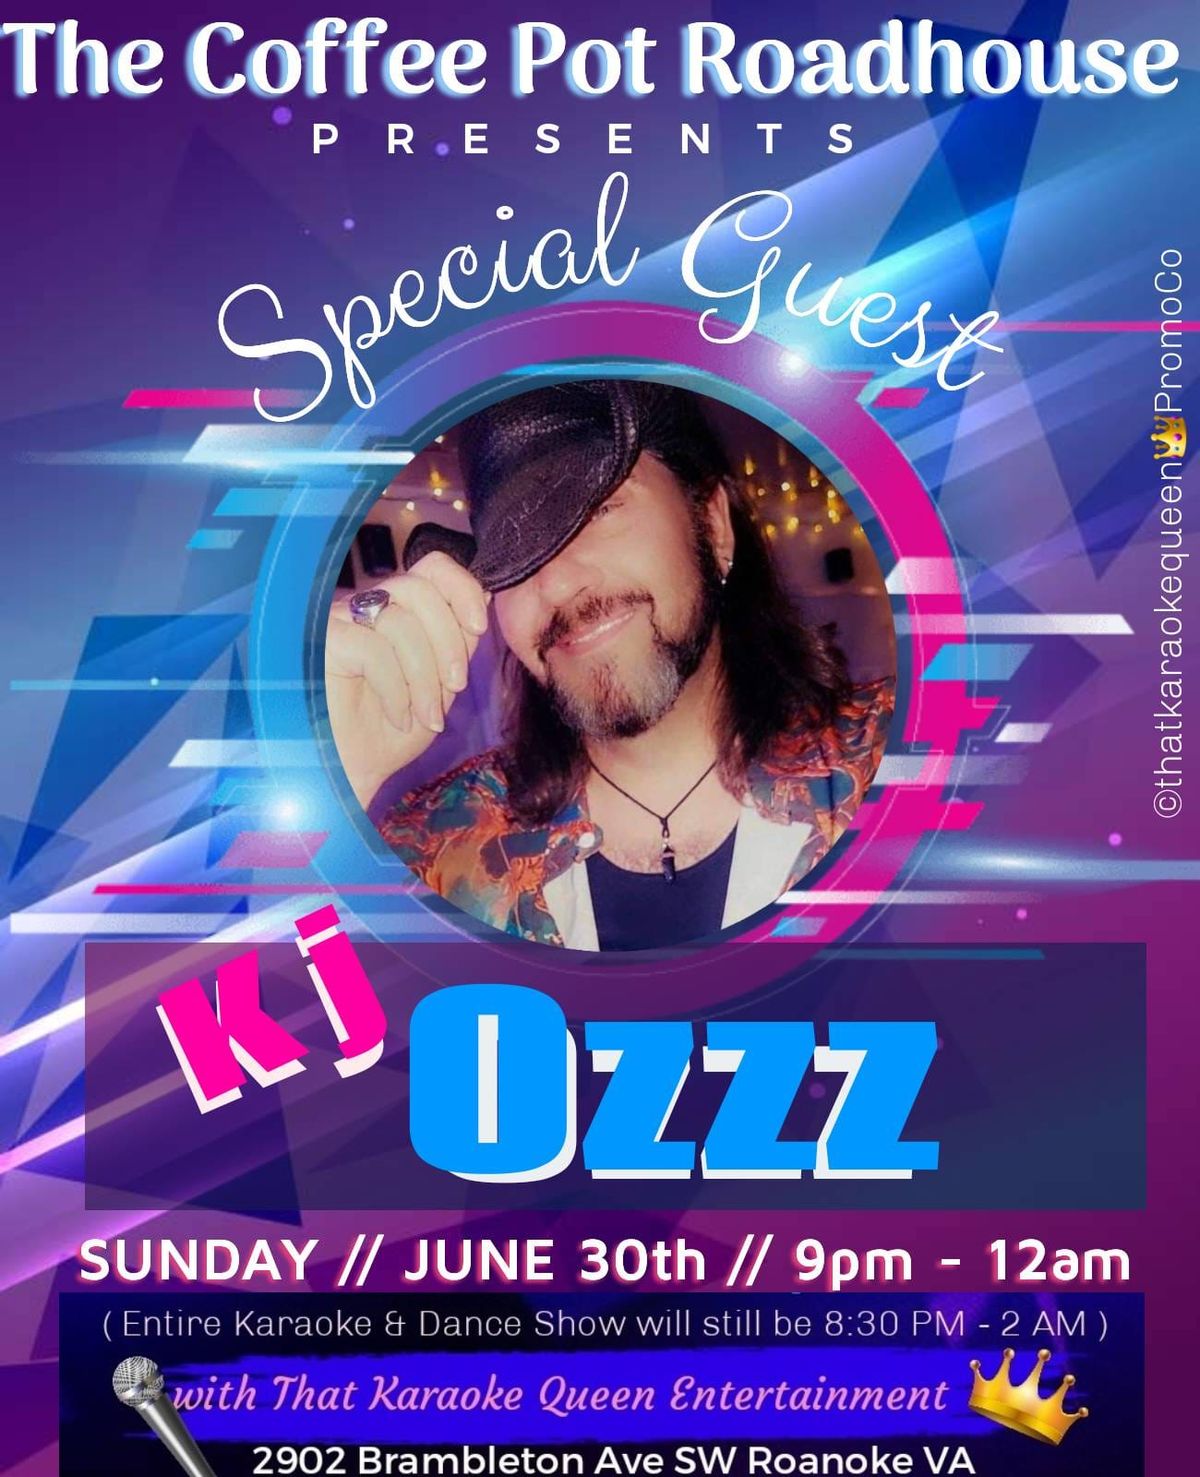 Sunday Karaoke with Special Guest KJ Ozzz